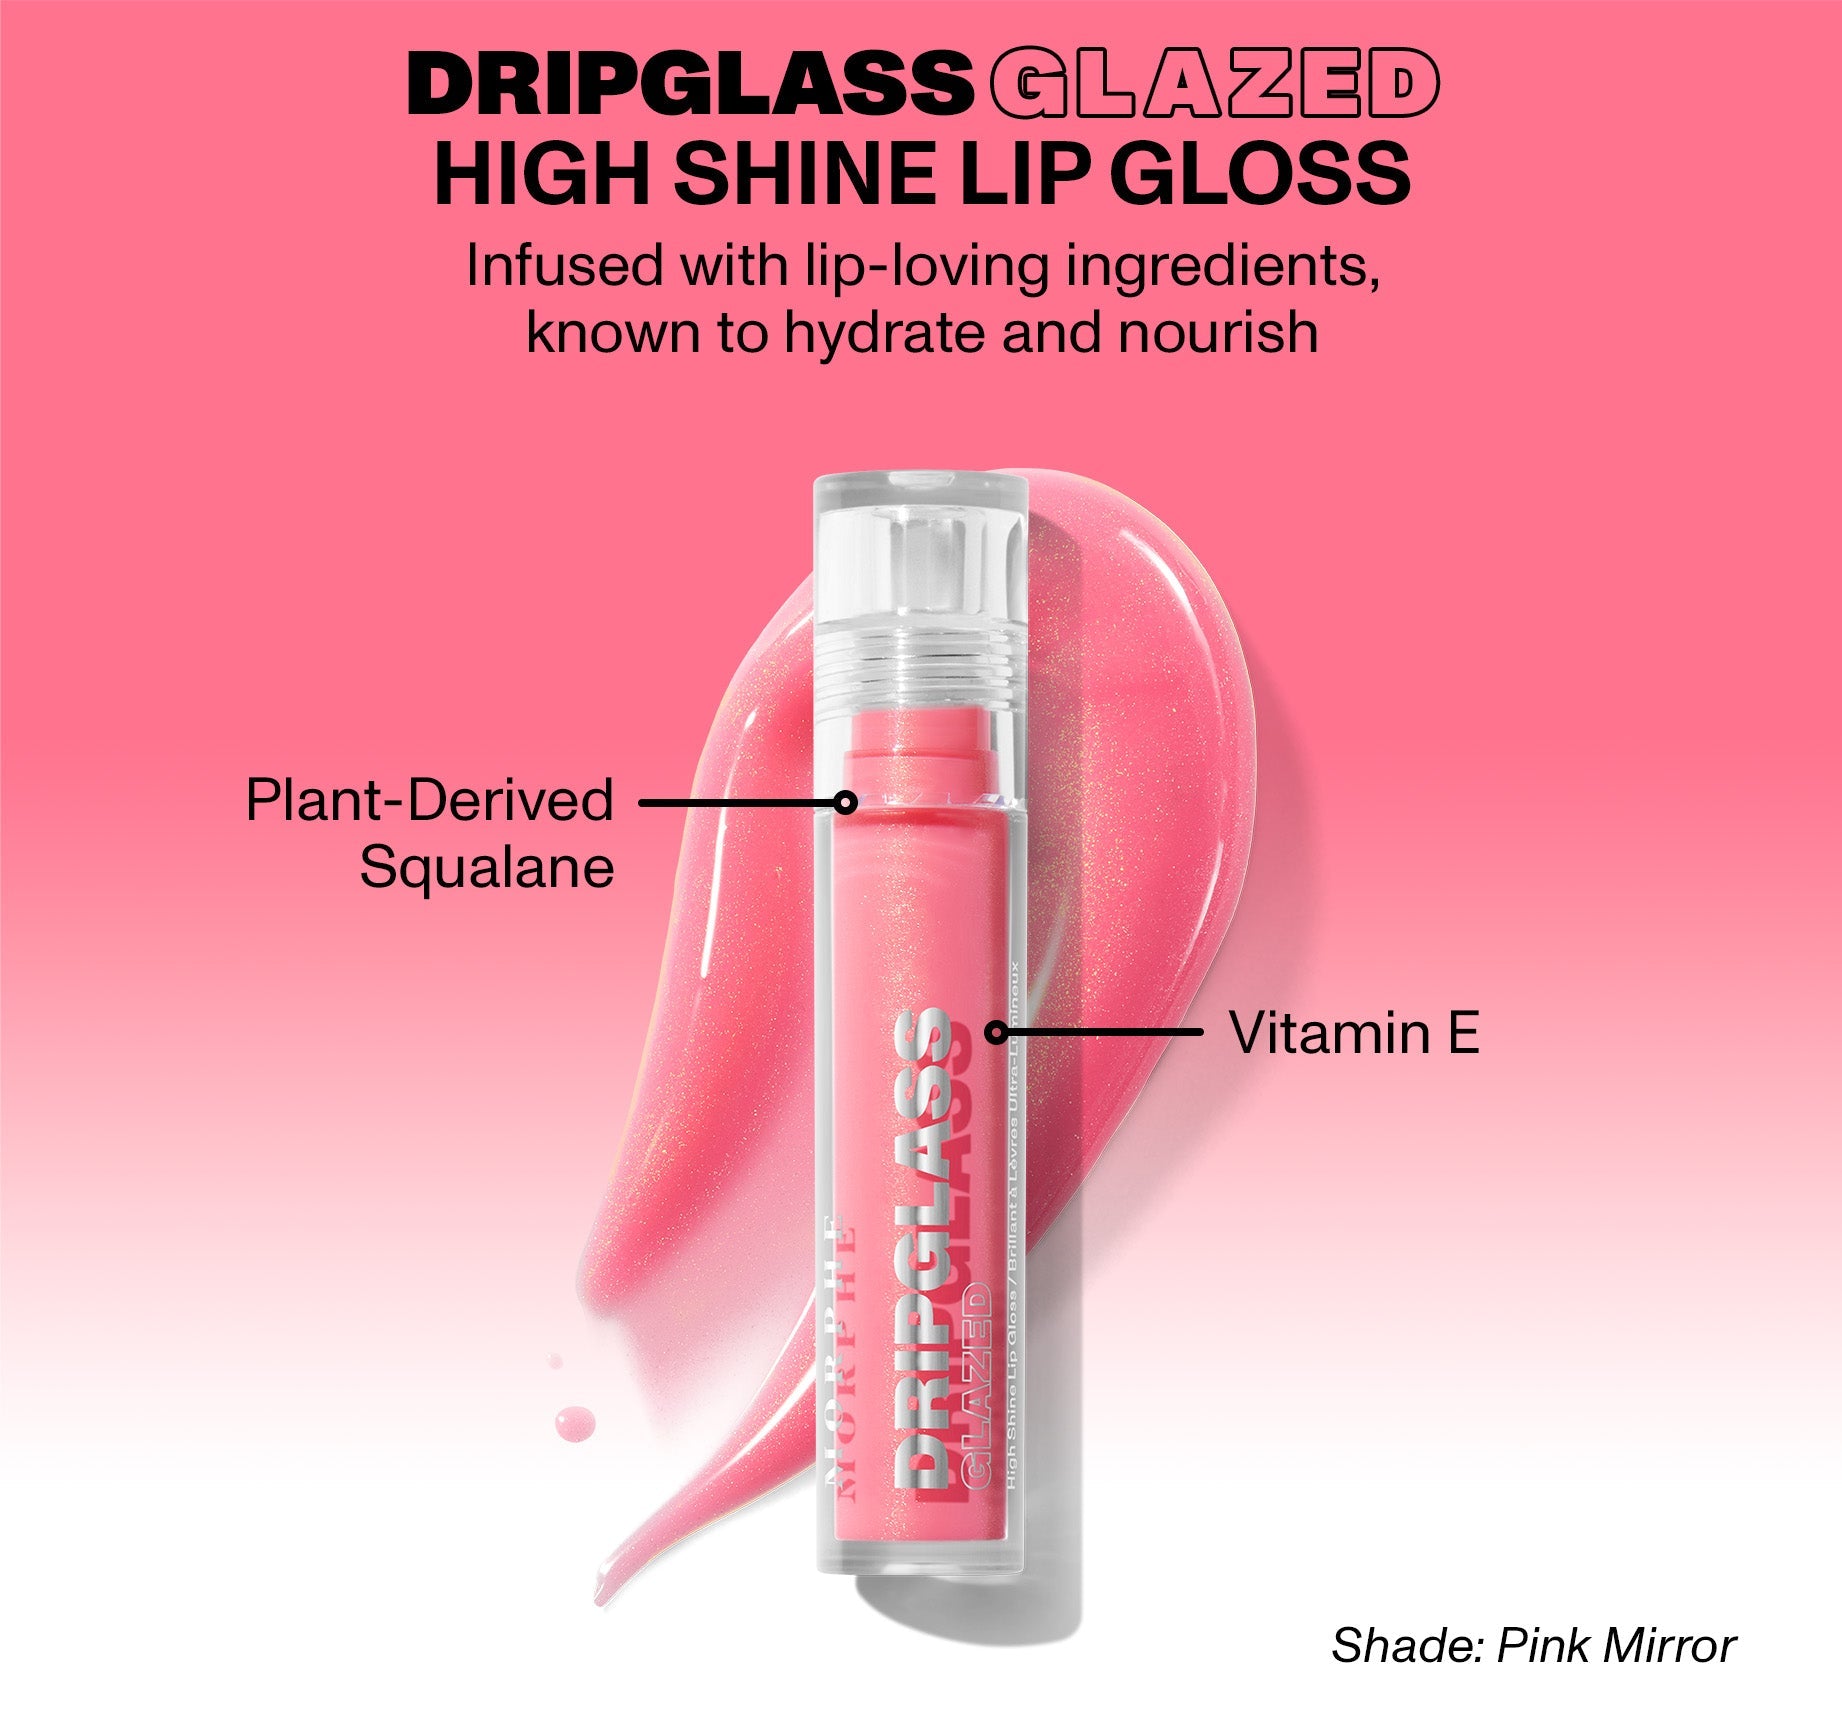 Dripglass Glazed High Shine Lip Gloss - Polished Peach - Image 9